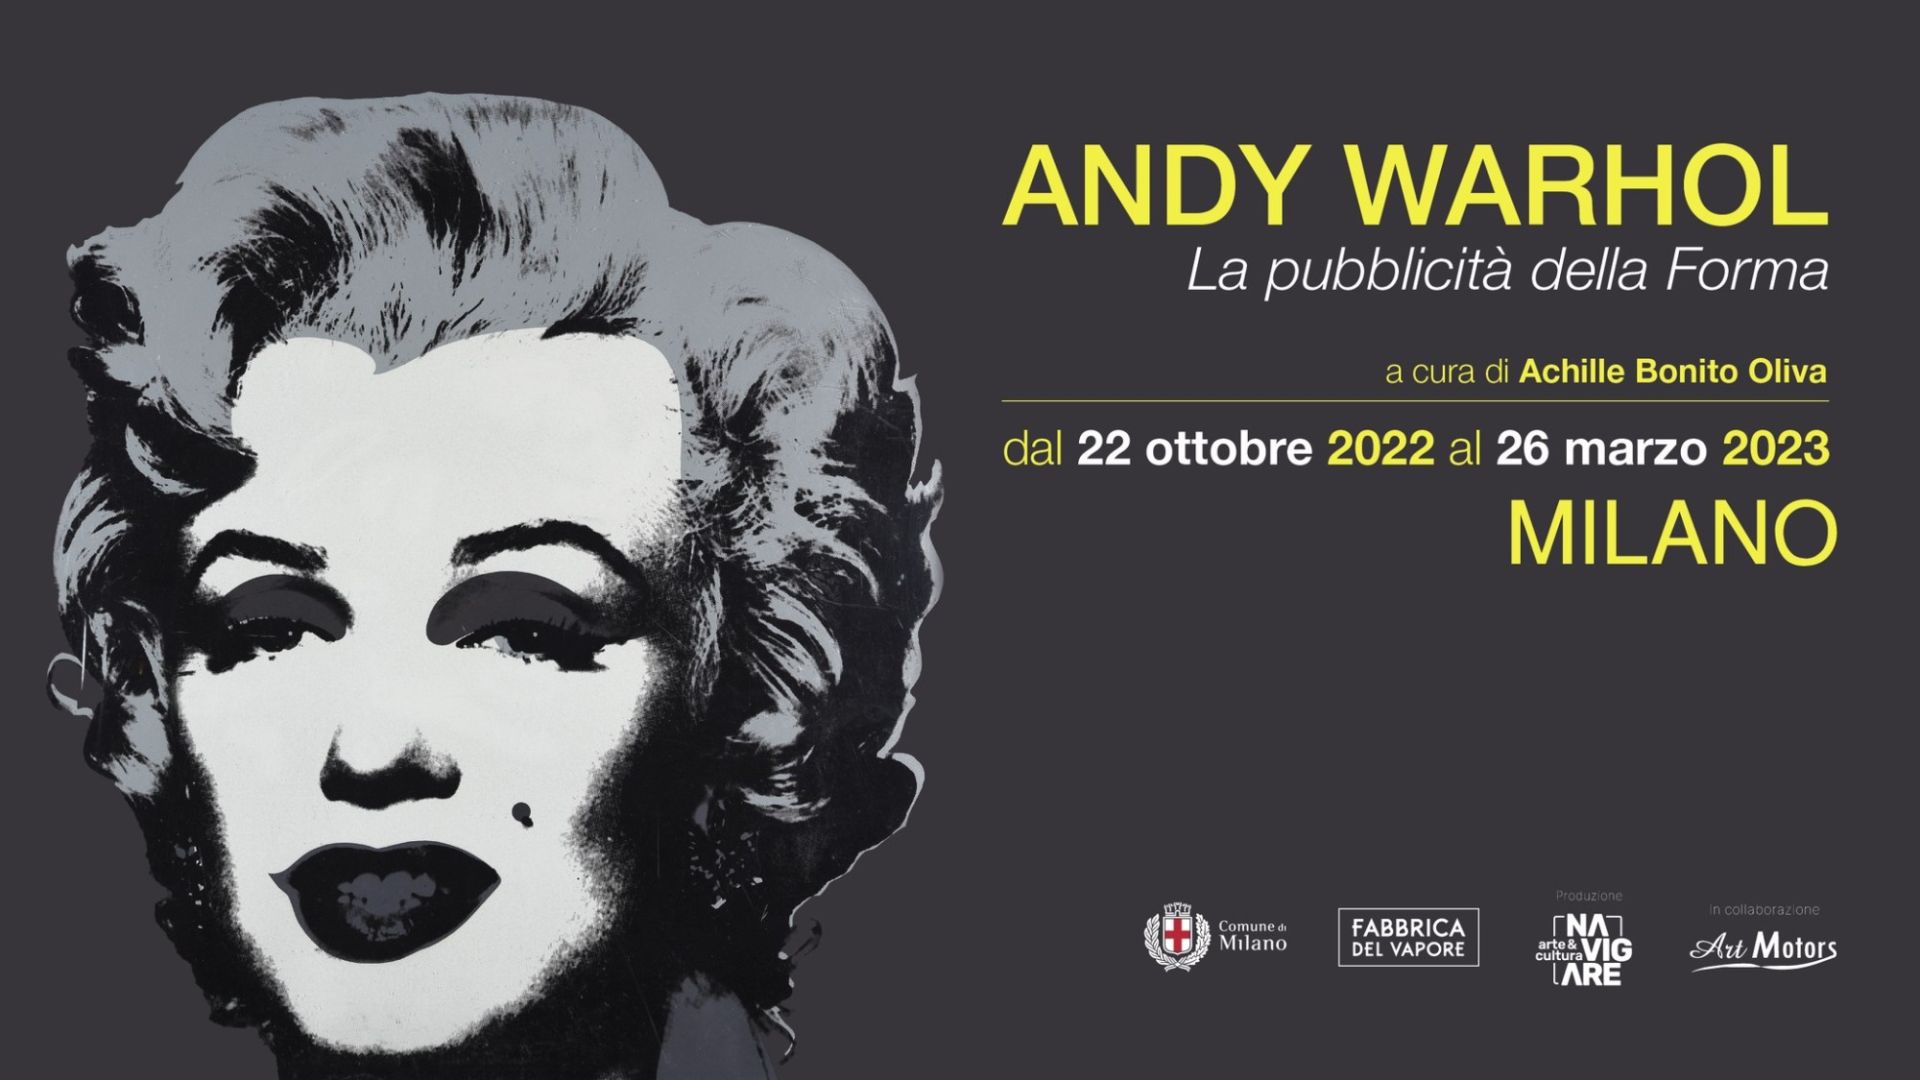 Andy Warhol: La pubblicità della Forma